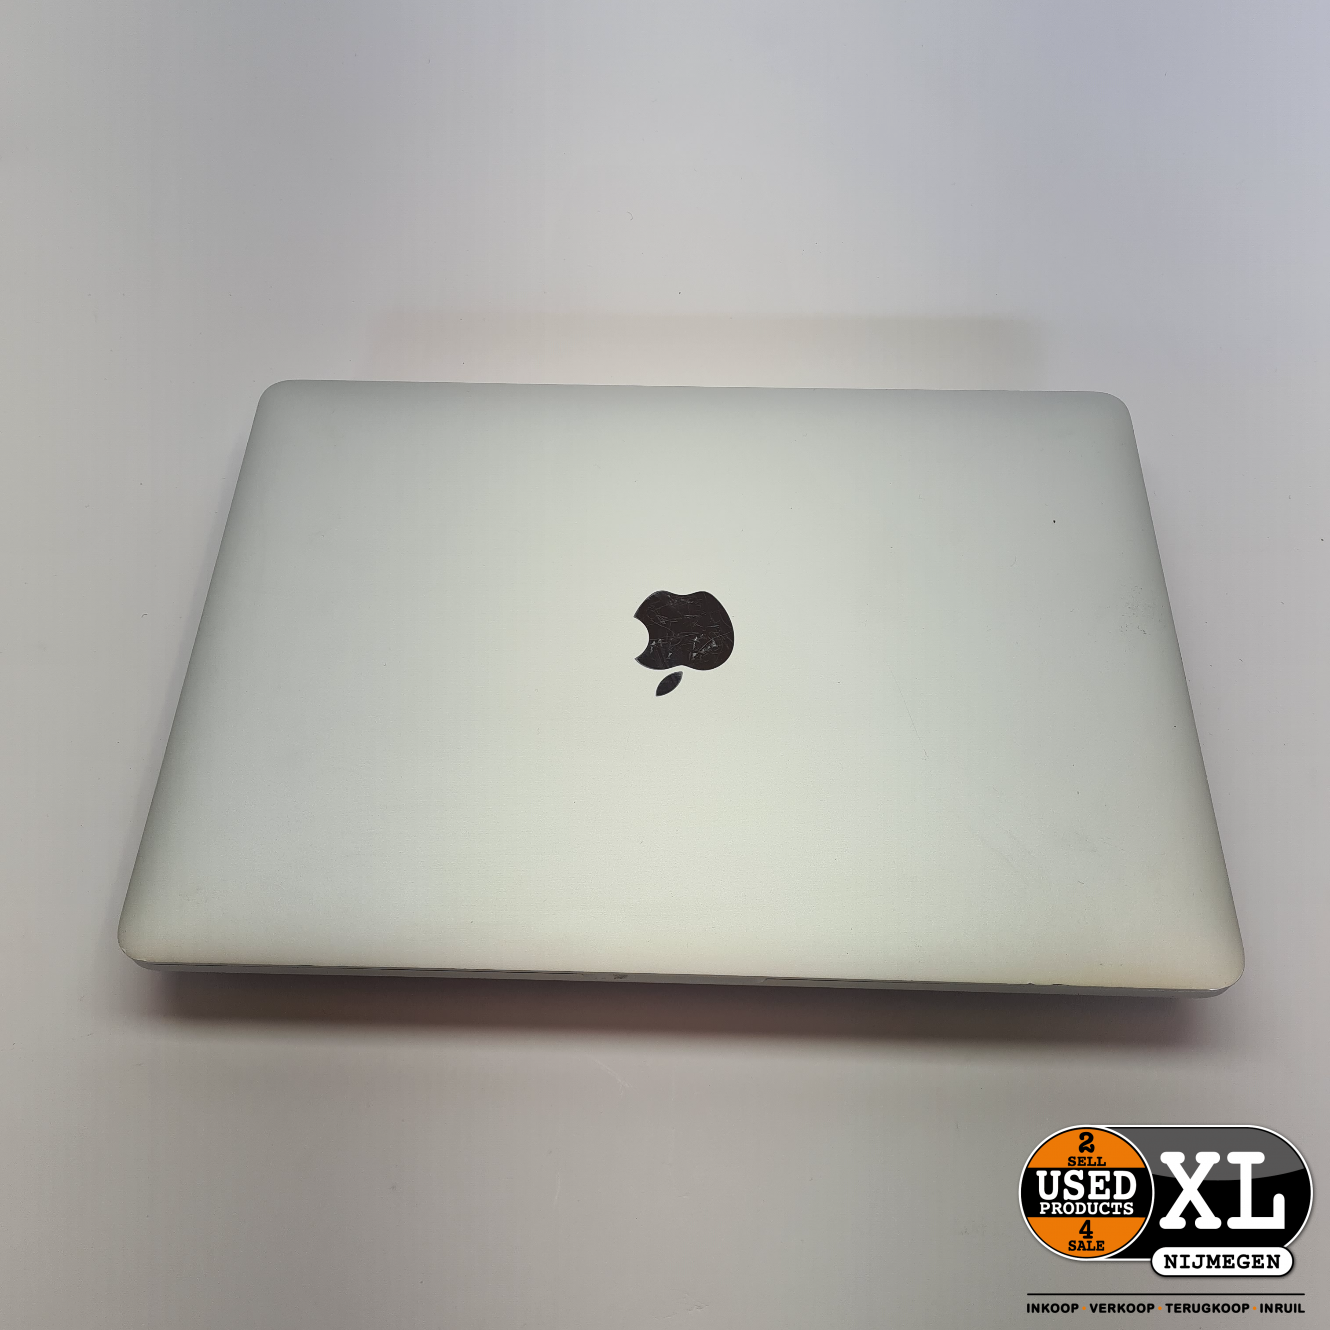 bezoeker Middel Inheems MacBook Pro 2017 Laptop 13 Inch | i5 8GB 256GB | met Garantie - Used  Products Nijmegen XL